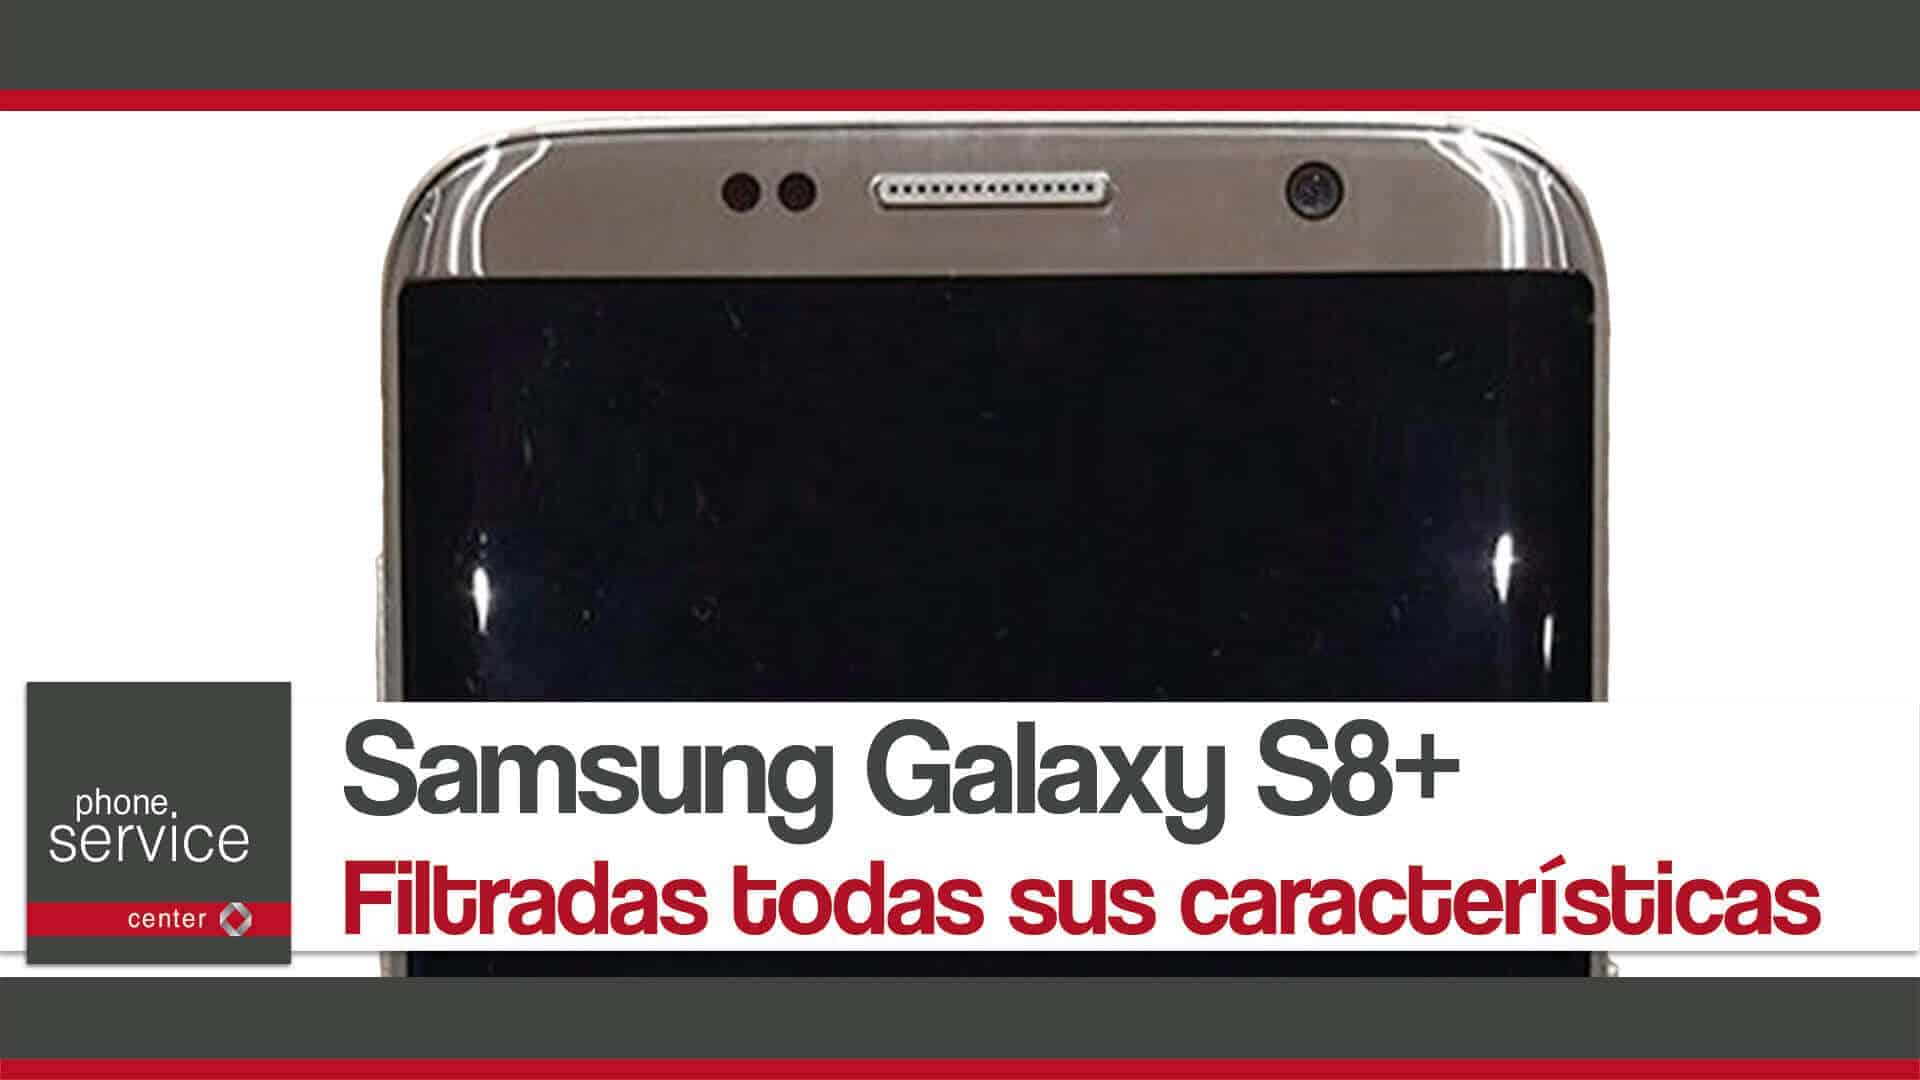 Samsung Galaxy S8+ filtradas todas sus caracteristicas